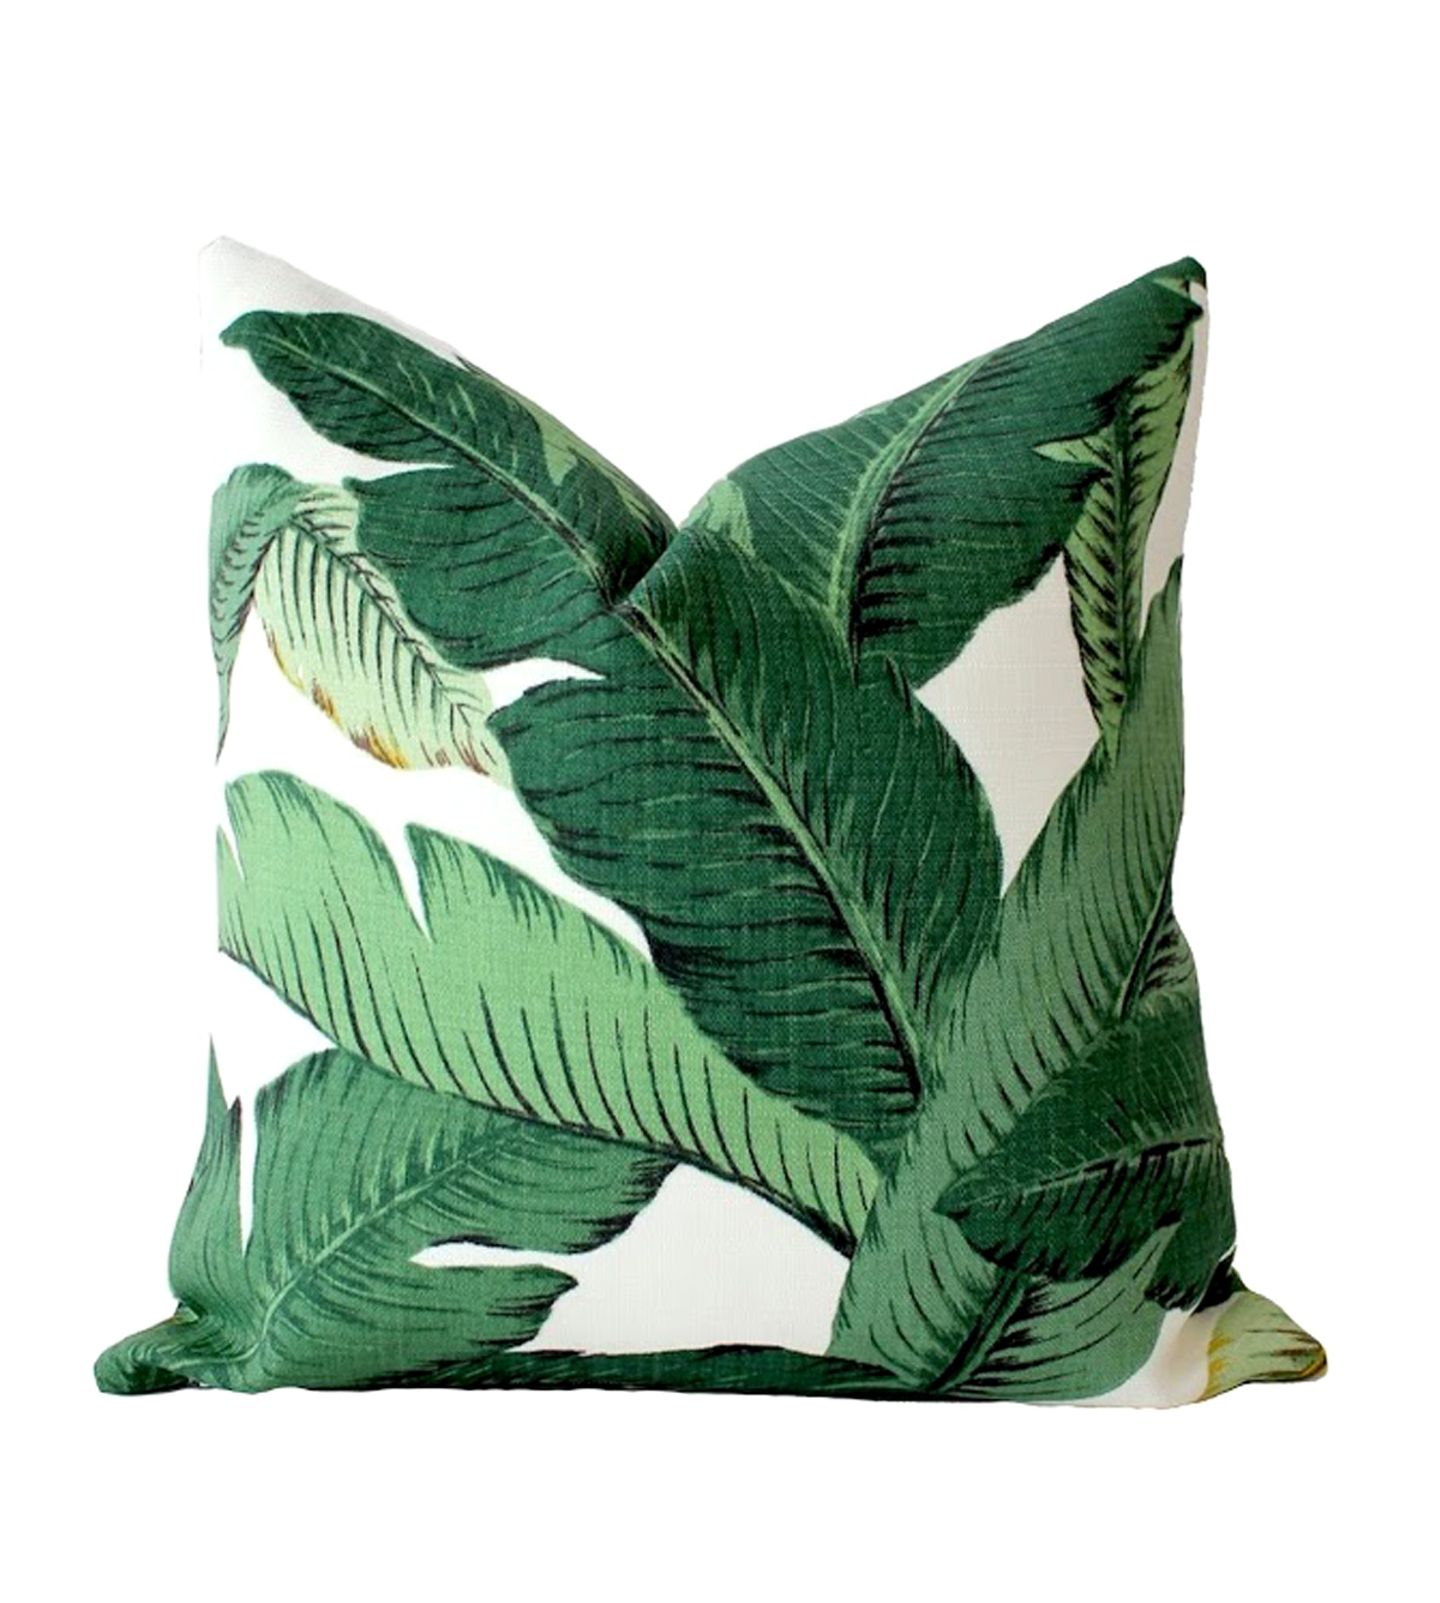 Erfrischend: Kissenbezug "Palm Leaves" von Whitlock & Co